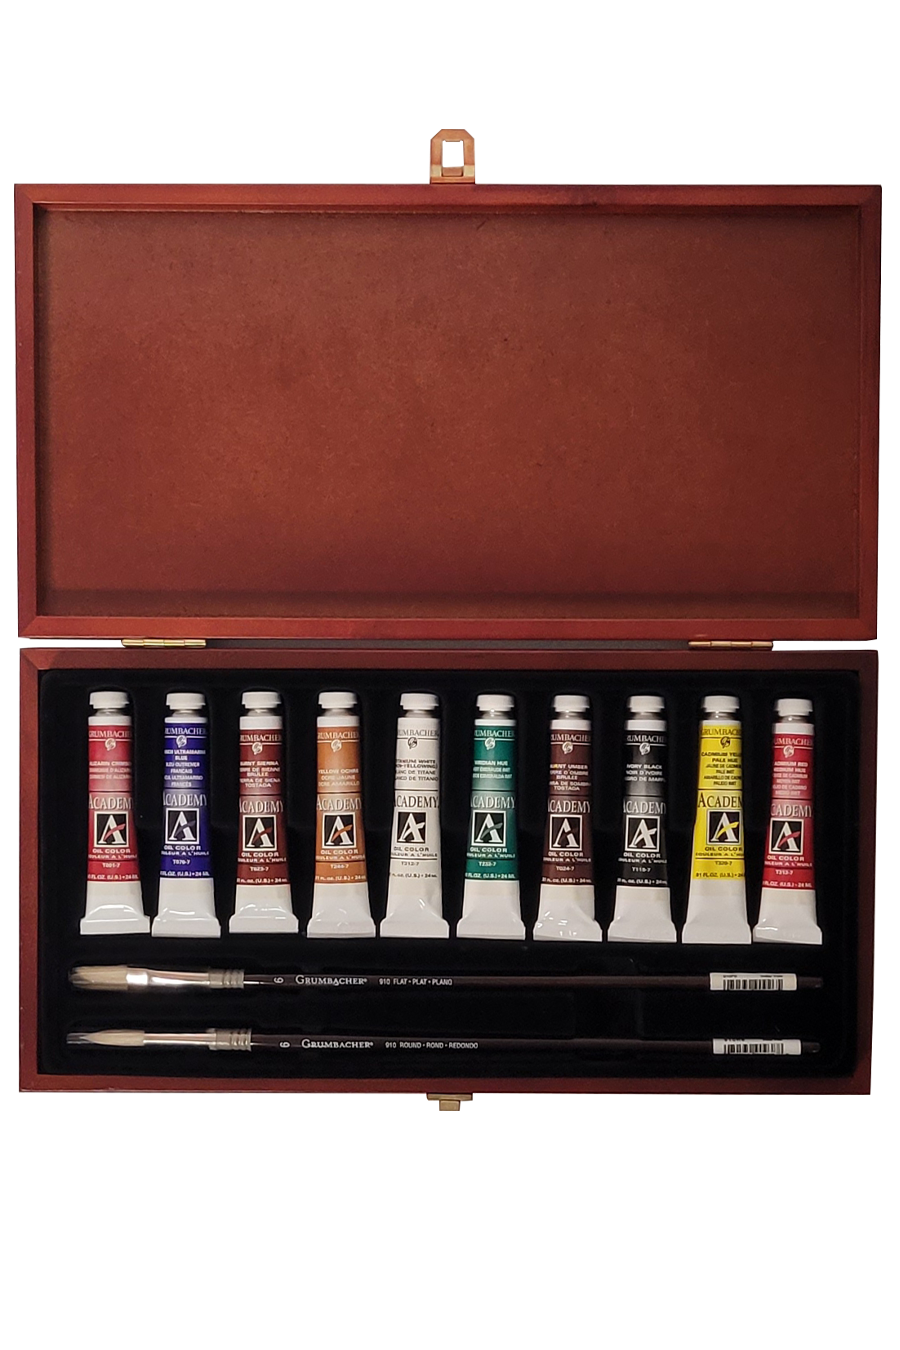 Grumbacher® Academy® Oil Wood Box Set, 13 pcs